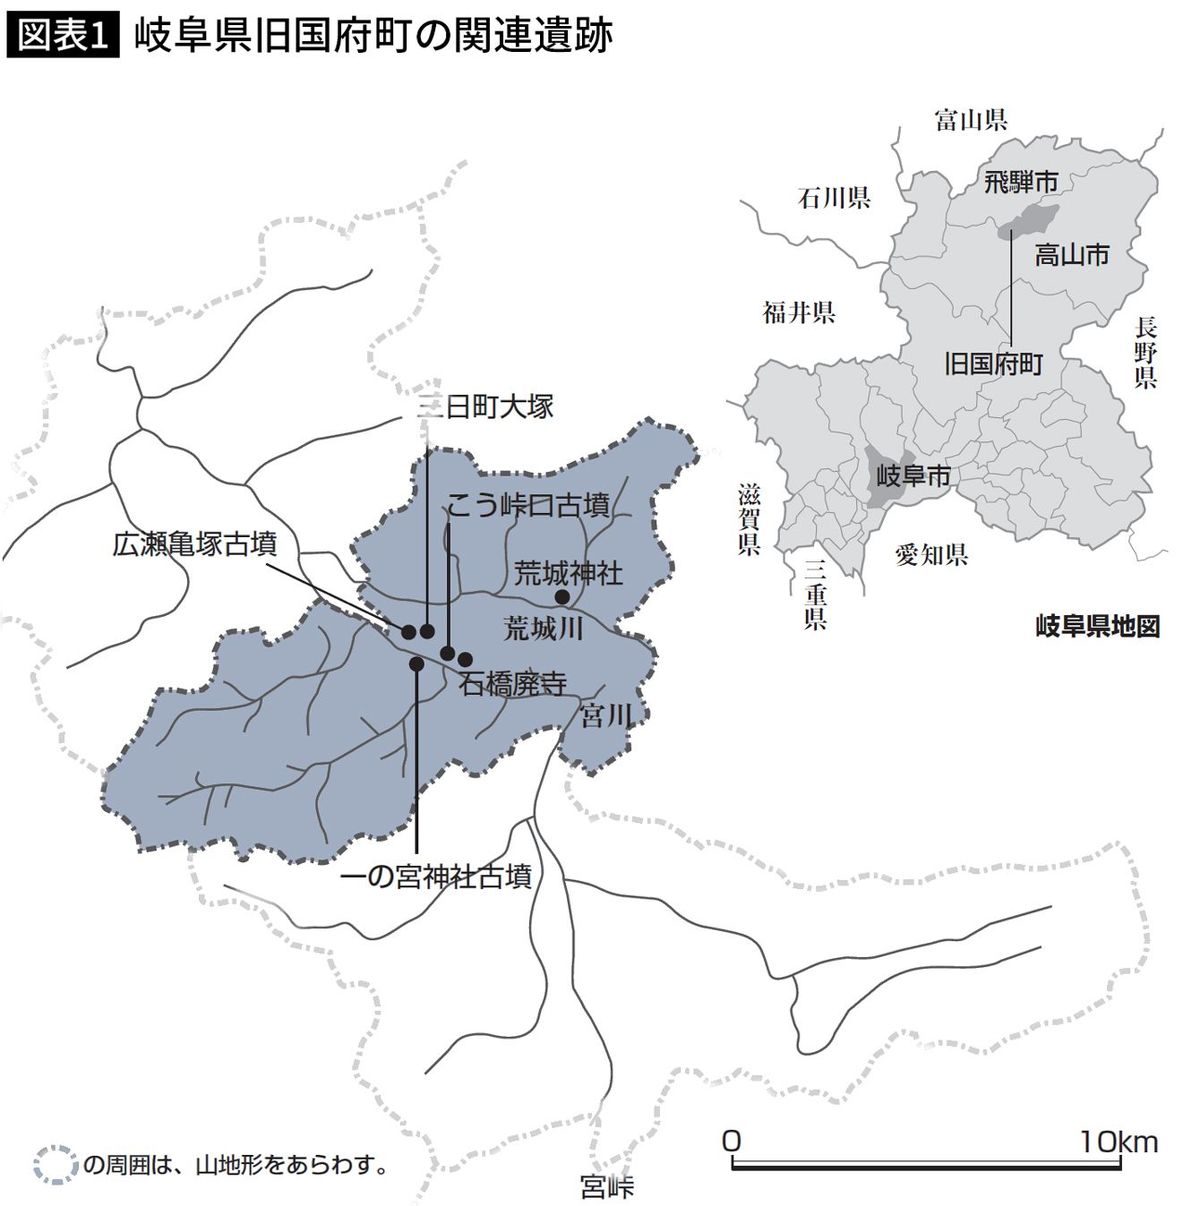 【図表】岐阜県旧国府町の関連遺跡